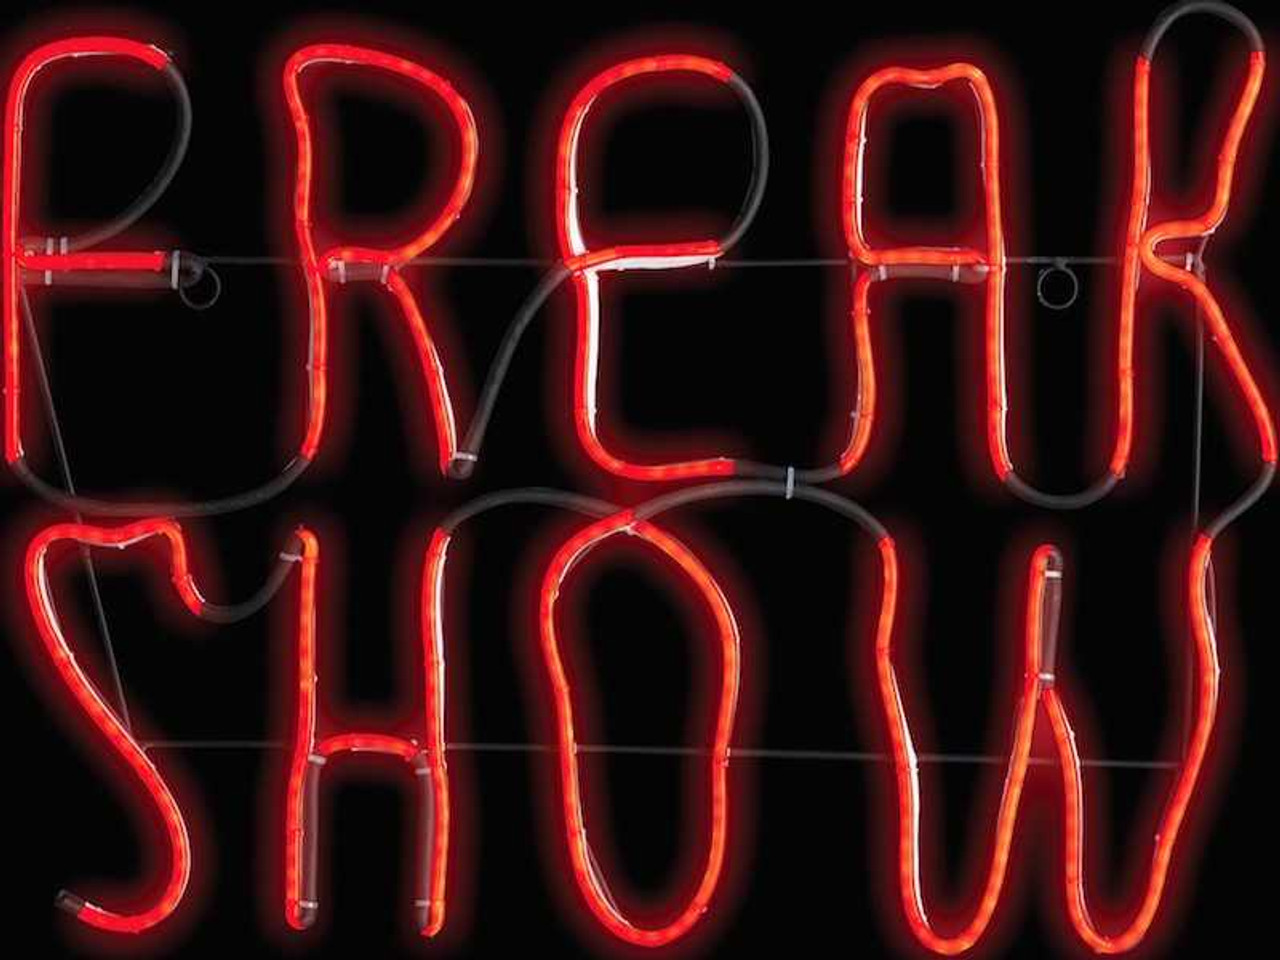 Freak Show Neon Light LED Sign